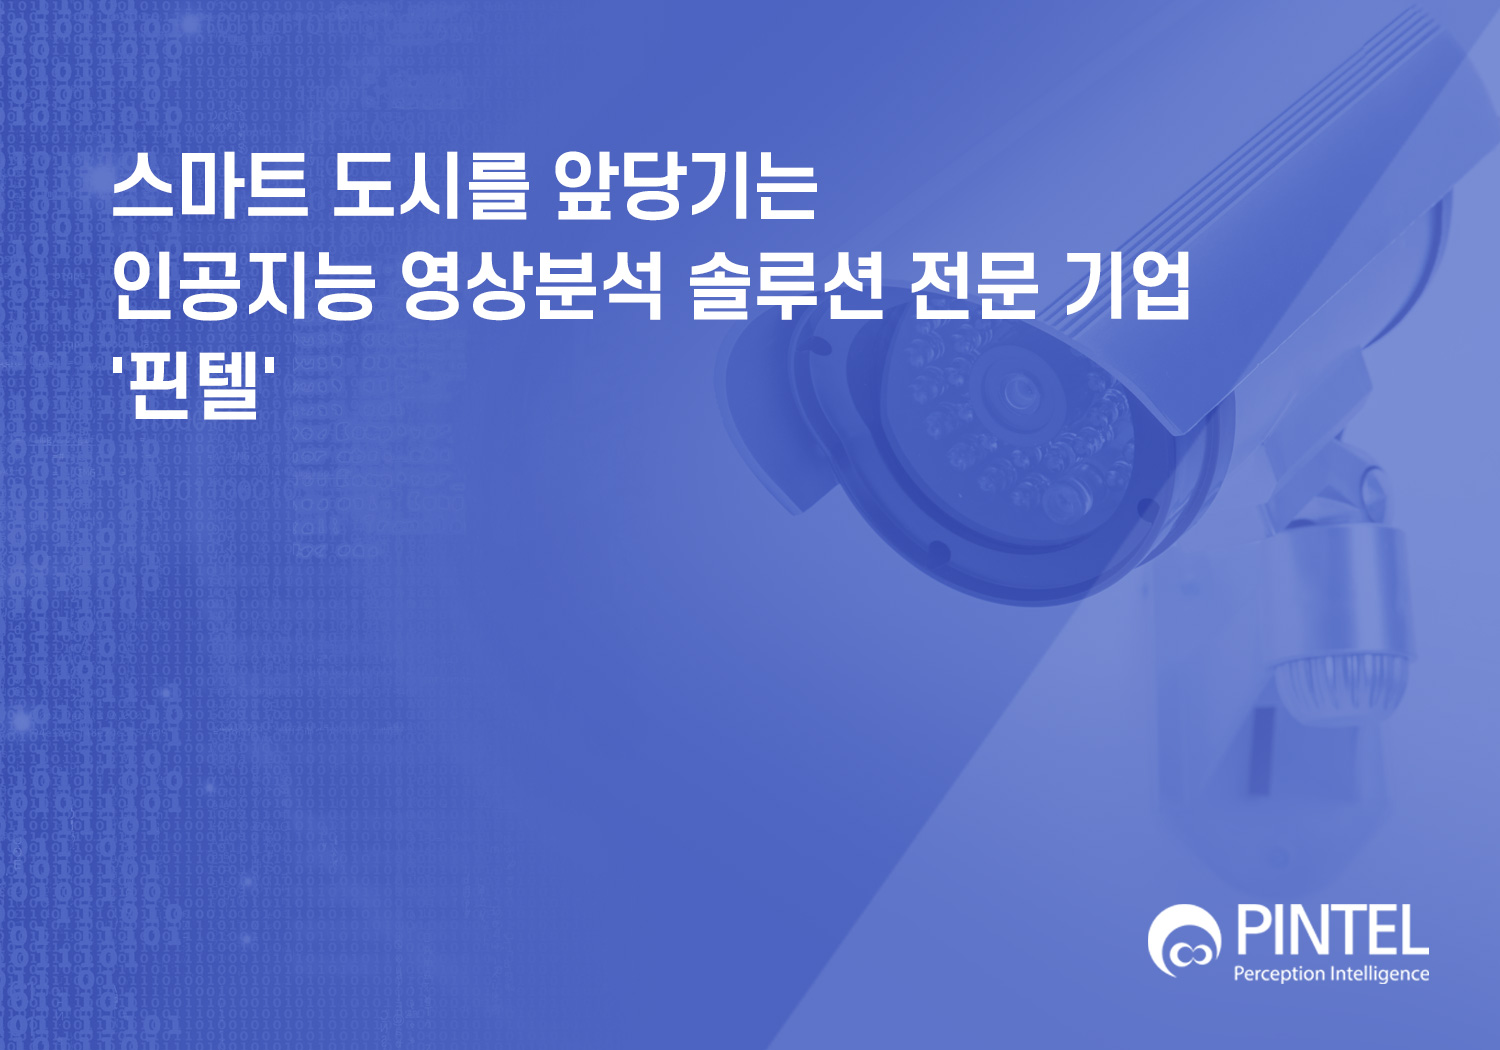 [KBS World Radio - 경제인사이드] 영상분석 솔루션 전문 기업, '핀텔' 썸네일